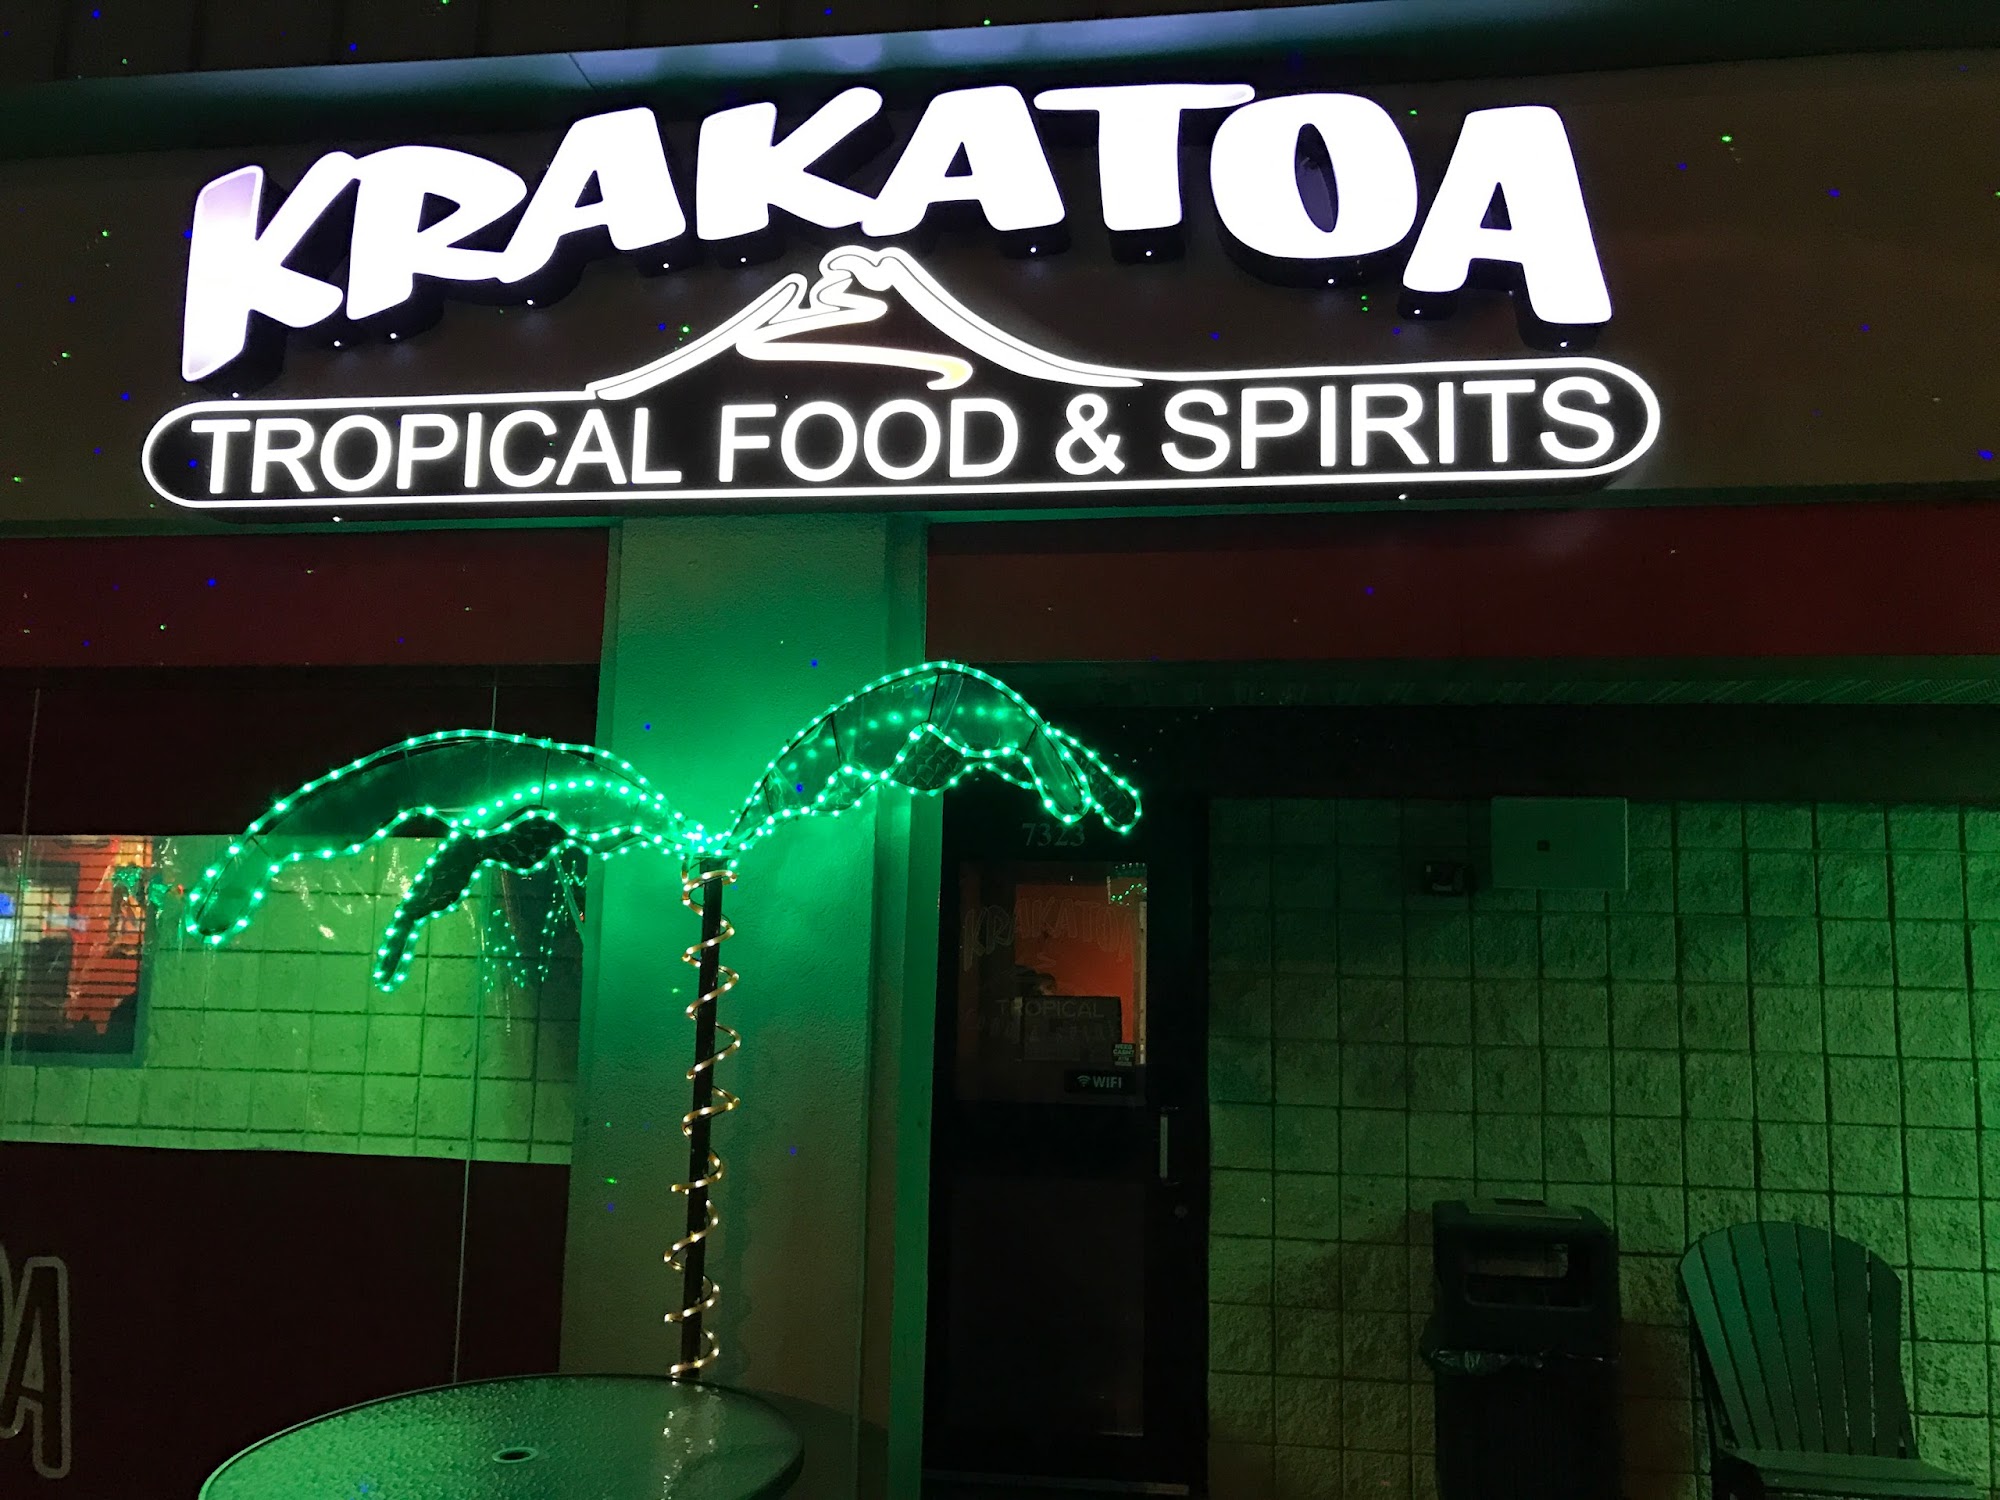 Krakatoa Tropical Food & Spirits